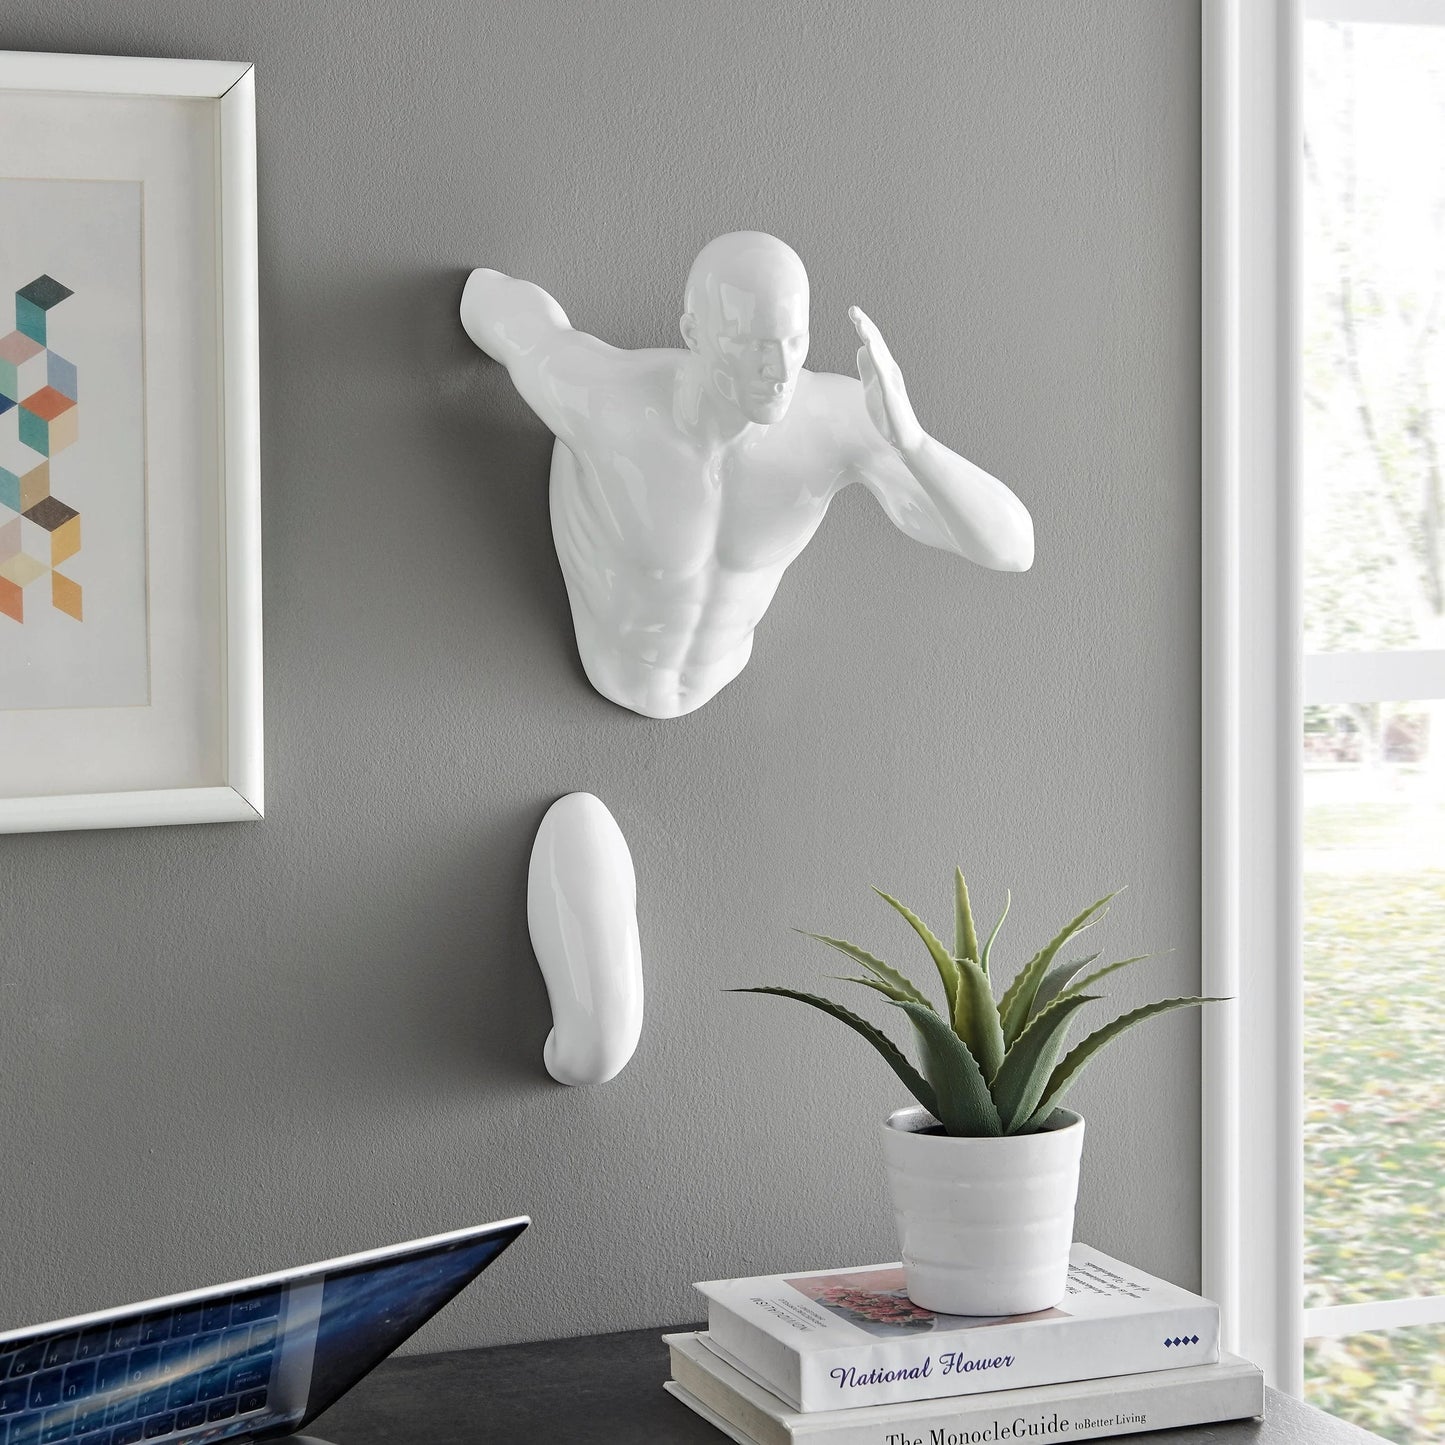 Finesse Decor 20" Man Runner Wall Sculpture - White 2